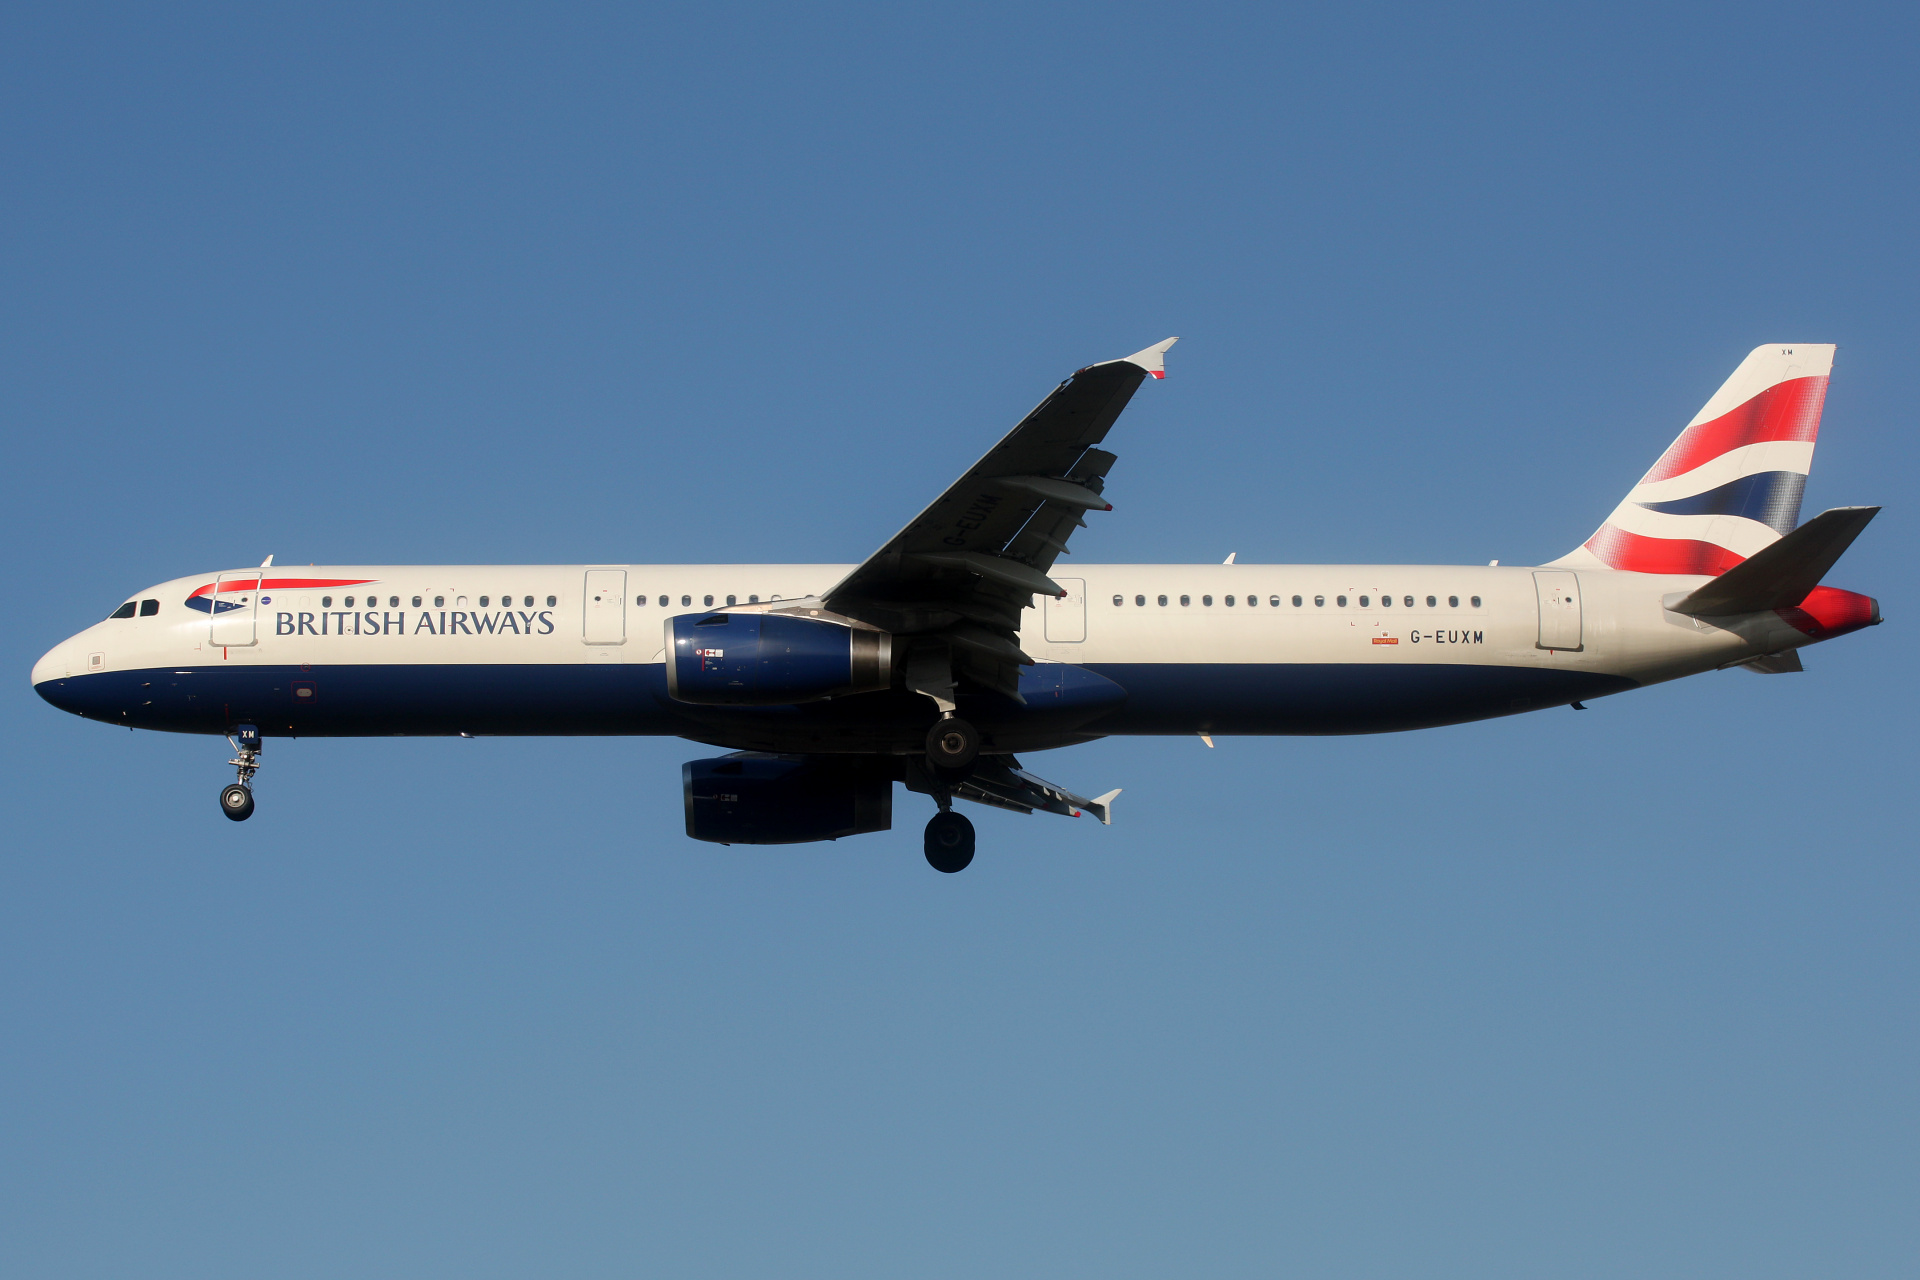 G-EUXM (Aircraft » EPWA Spotting » Airbus A321-200 » British Airways)